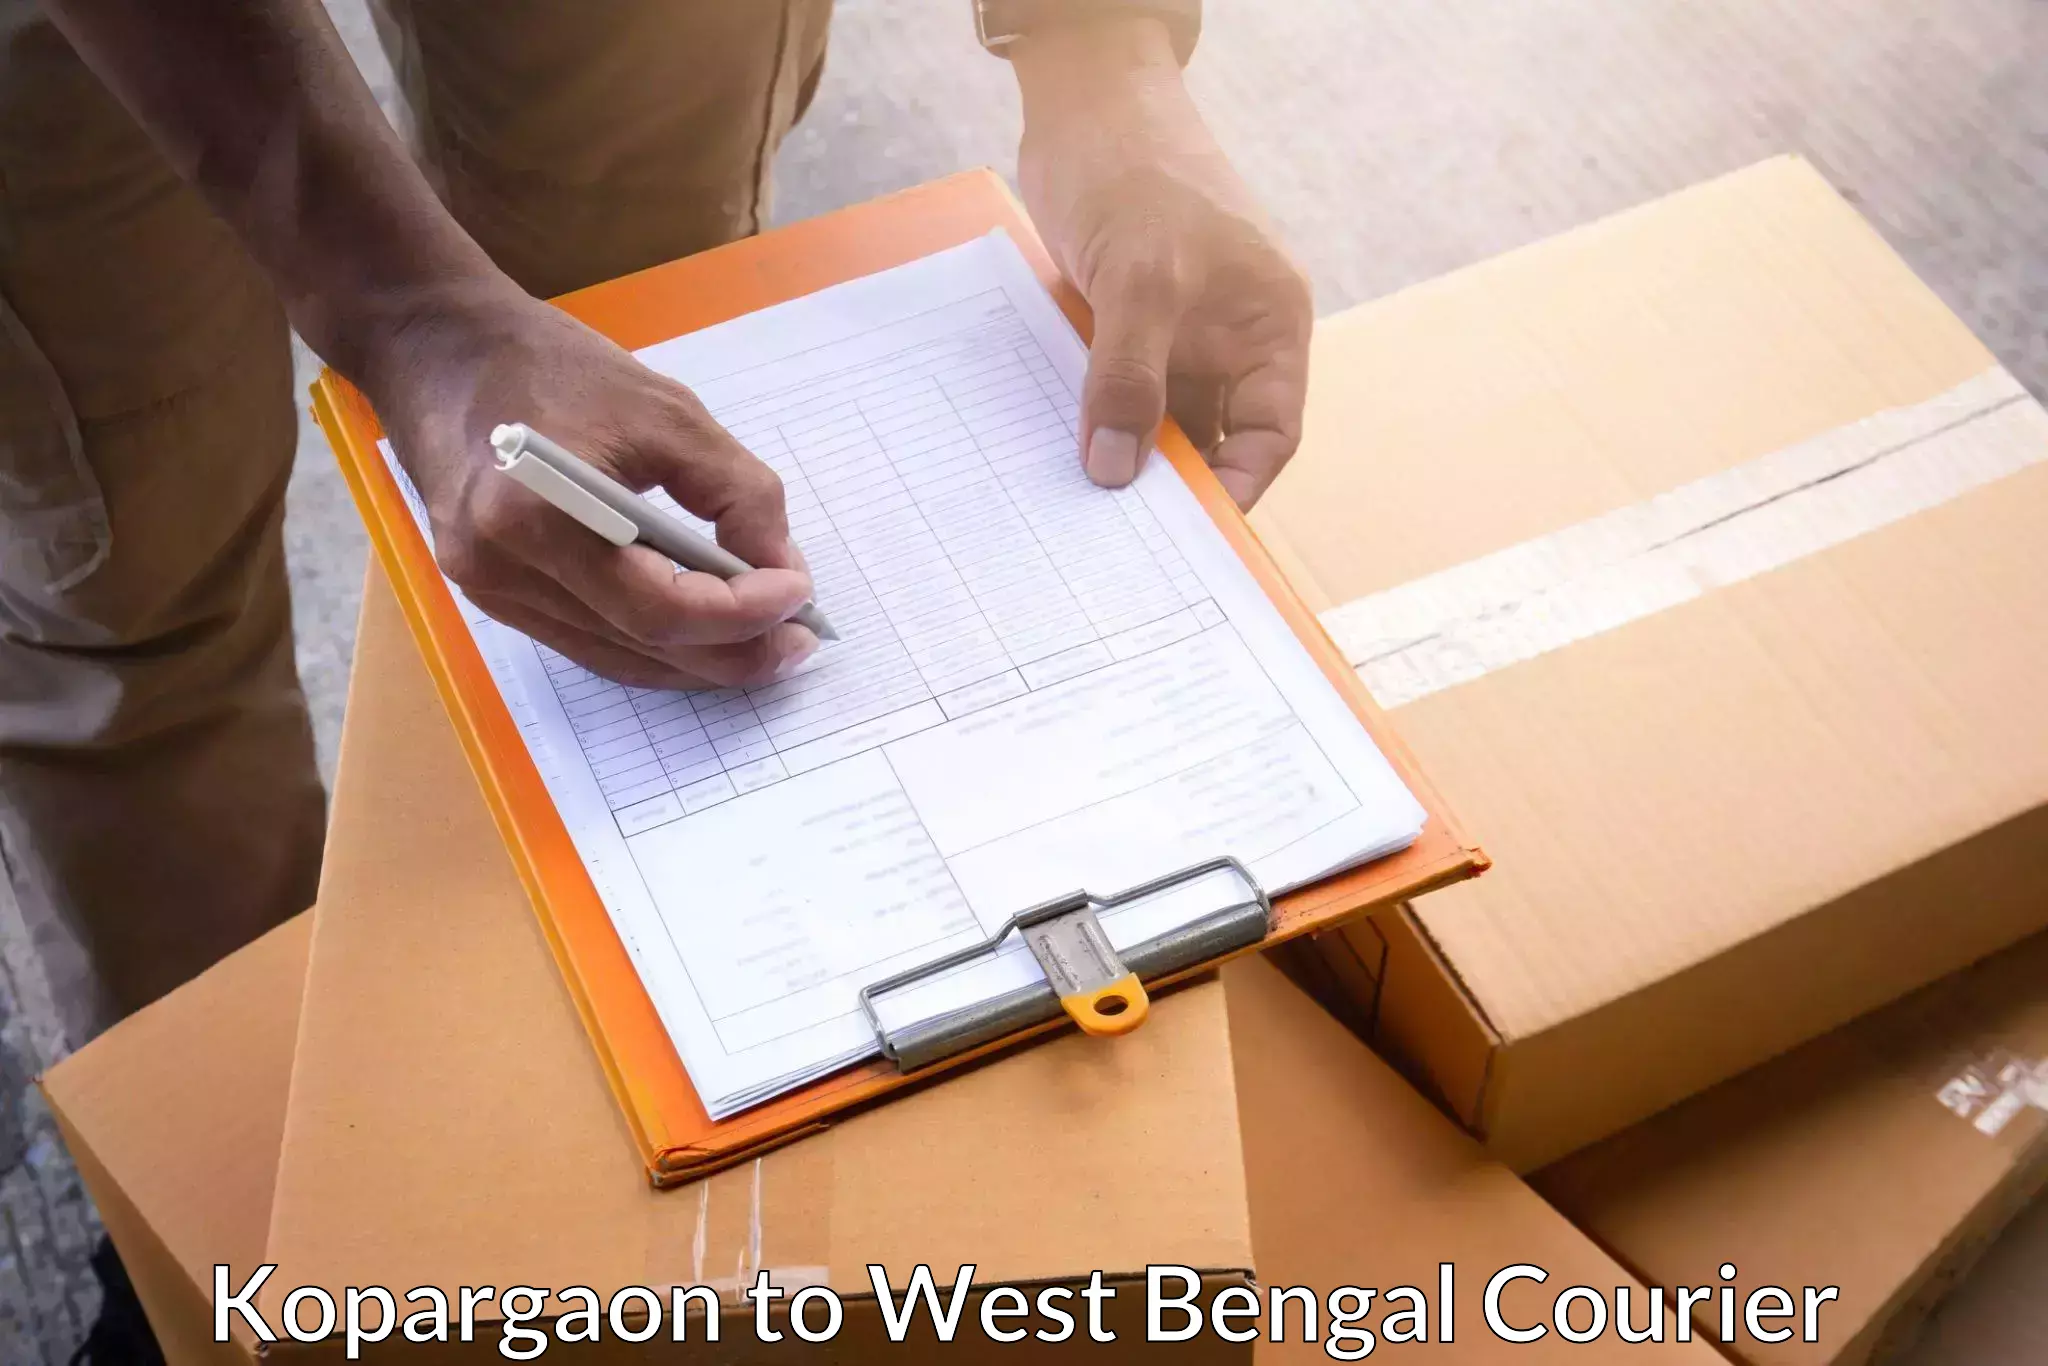 Reliable parcel services Kopargaon to West Bengal